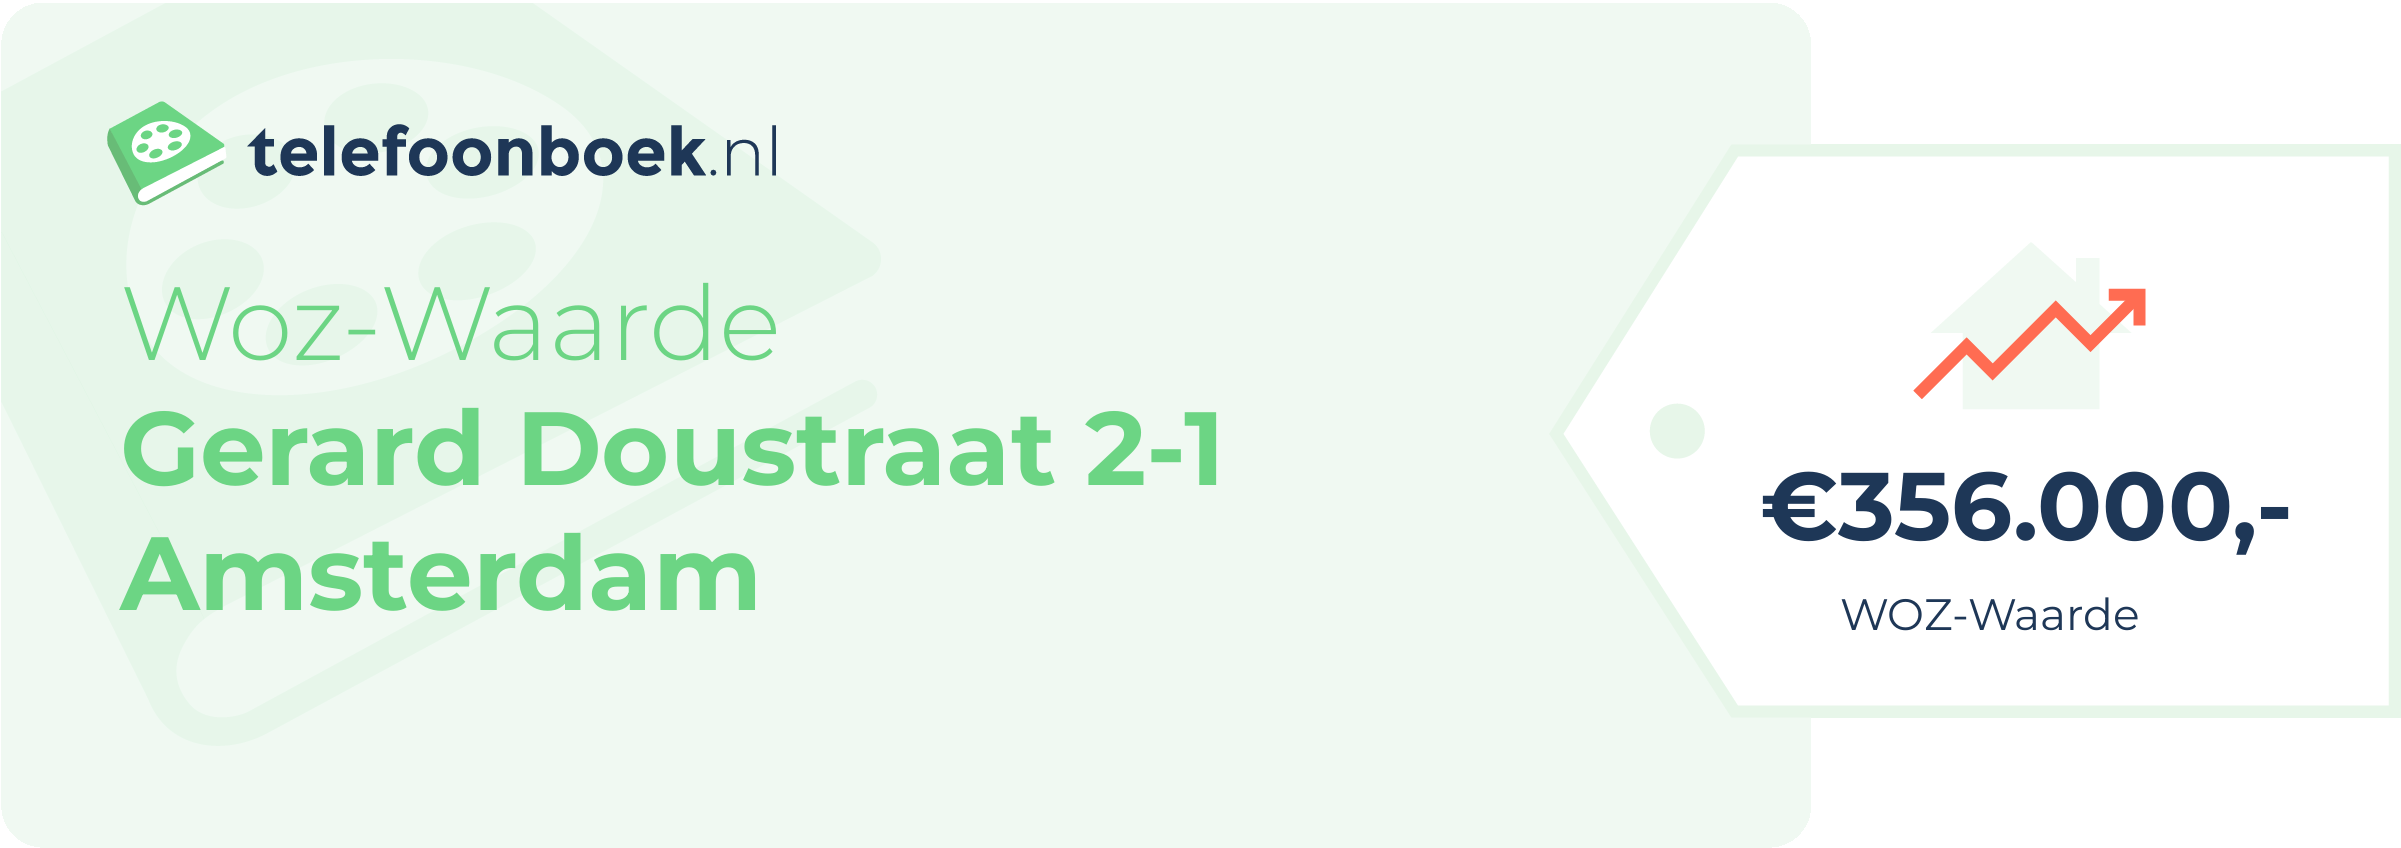 WOZ-waarde Gerard Doustraat 2-1 Amsterdam